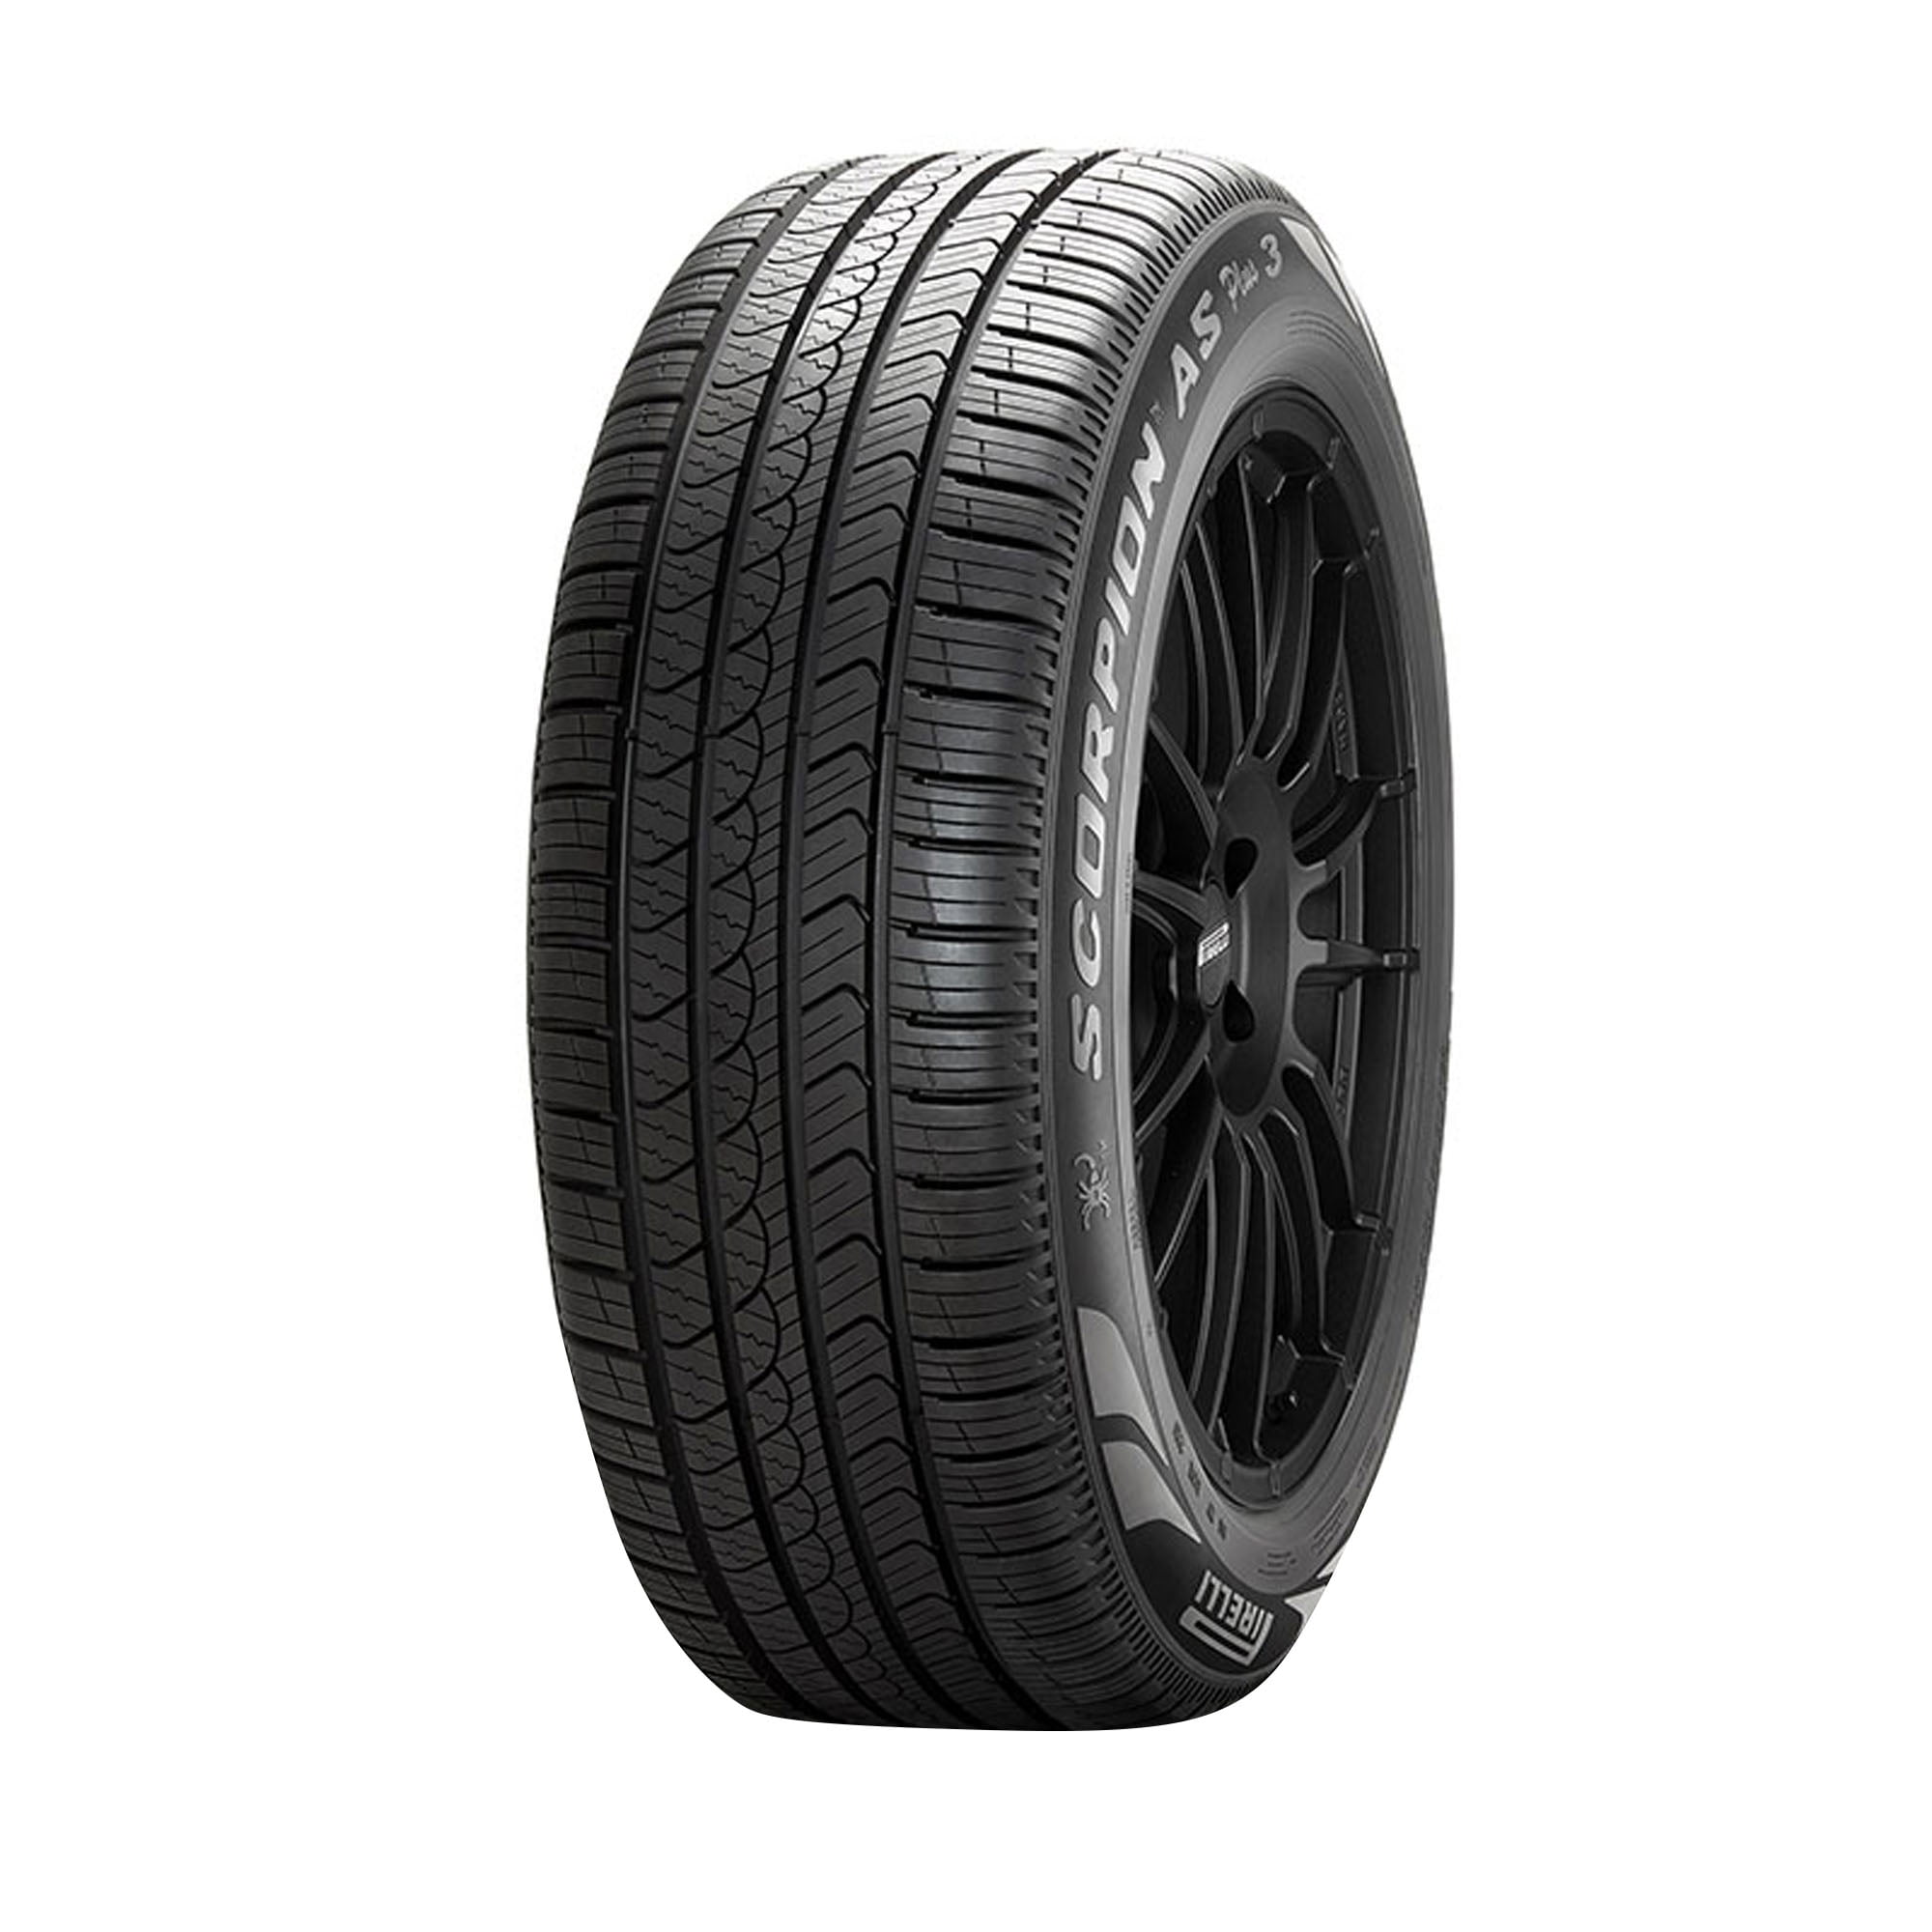 Pirelli Scorpion Zero All Season Elect All Season 235/50R20 104T XL  SUV/Crossover Tire